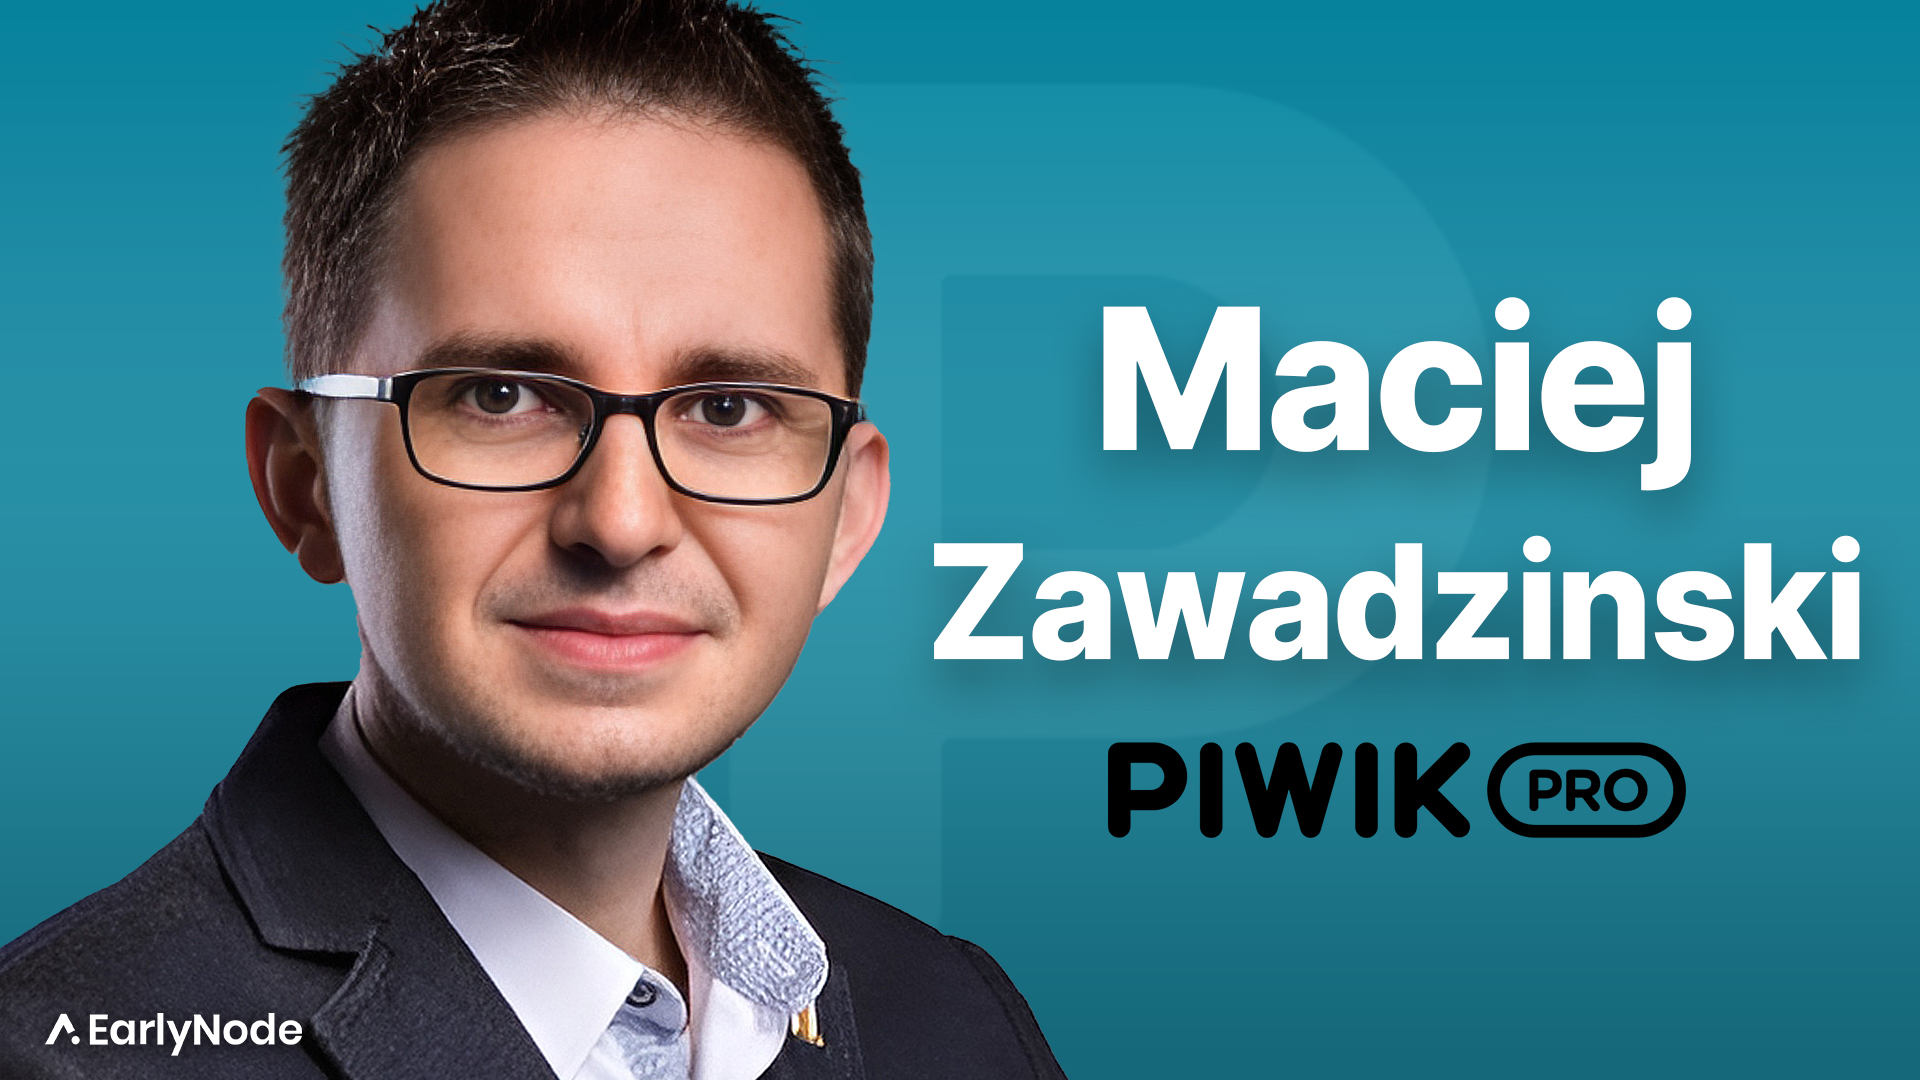 $0 to $12M ARR: How Maciej Zawadzinski is Capitalizing on the Google Analytics Sunset with Piwik PRO